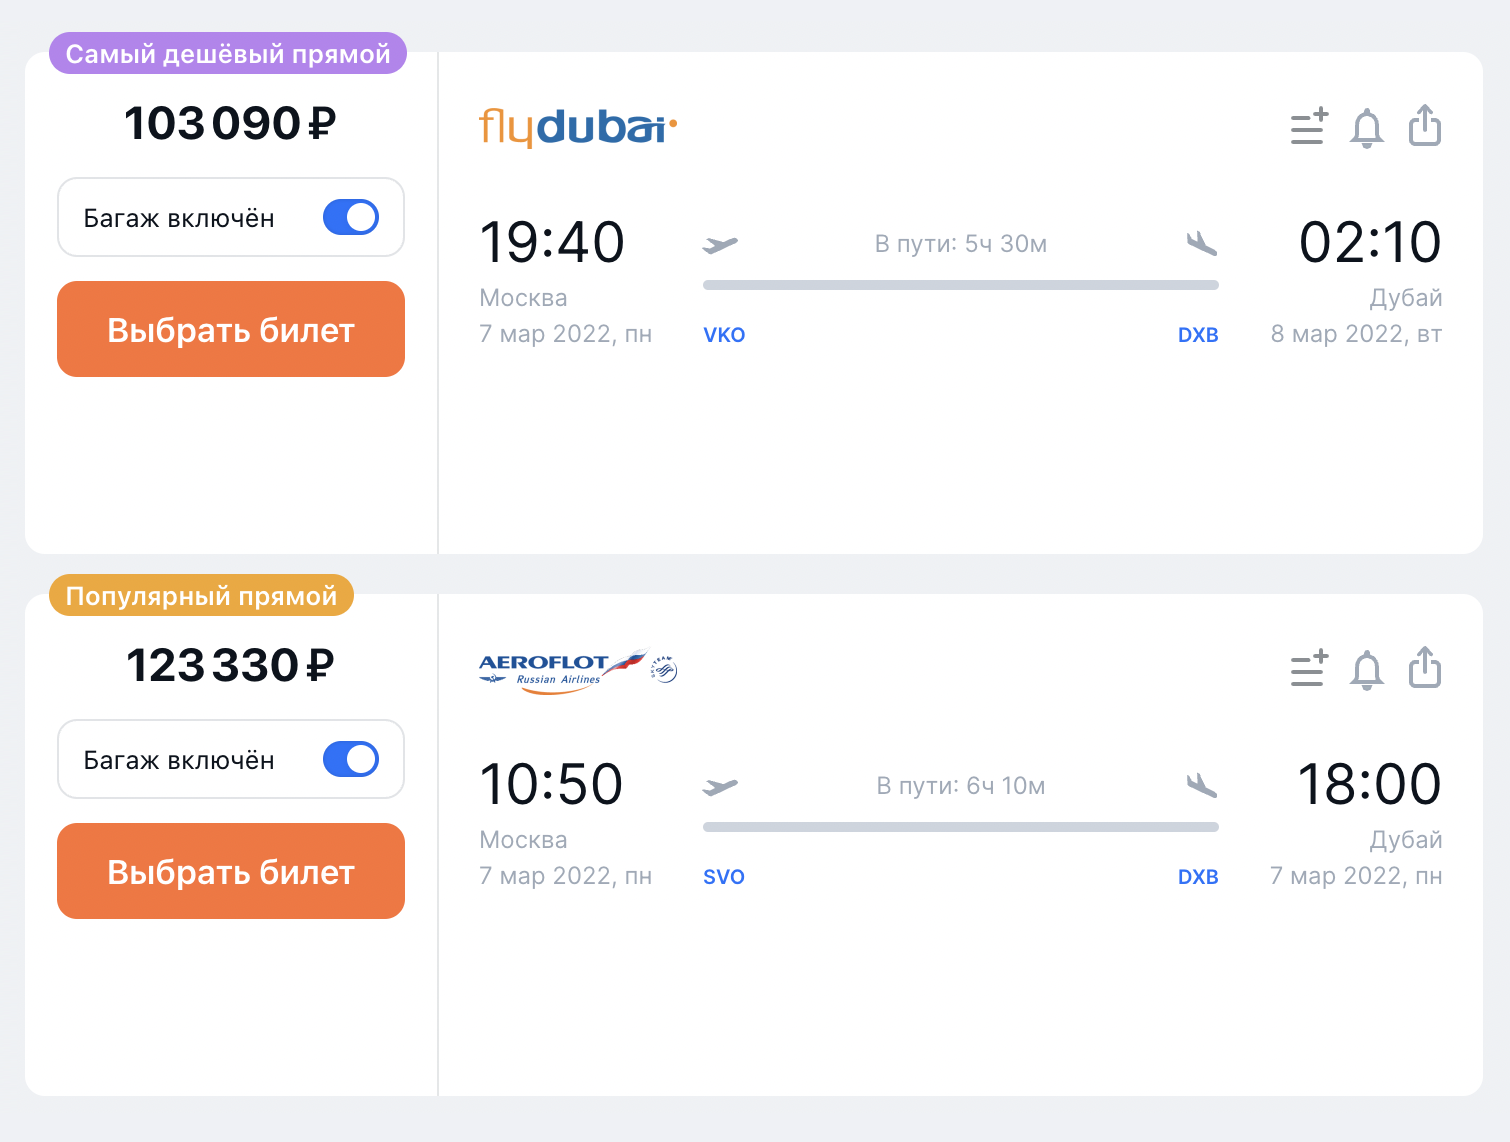 Самый дешевый прямой рейс в Дубай на одного человека с багажом на 7 марта — 103 090 ₽, летит Flydubai. Самый популярный прямой рейс на эту же дату — 116 811 ₽, летит «Аэрофлот». Источник: aviasales.ru